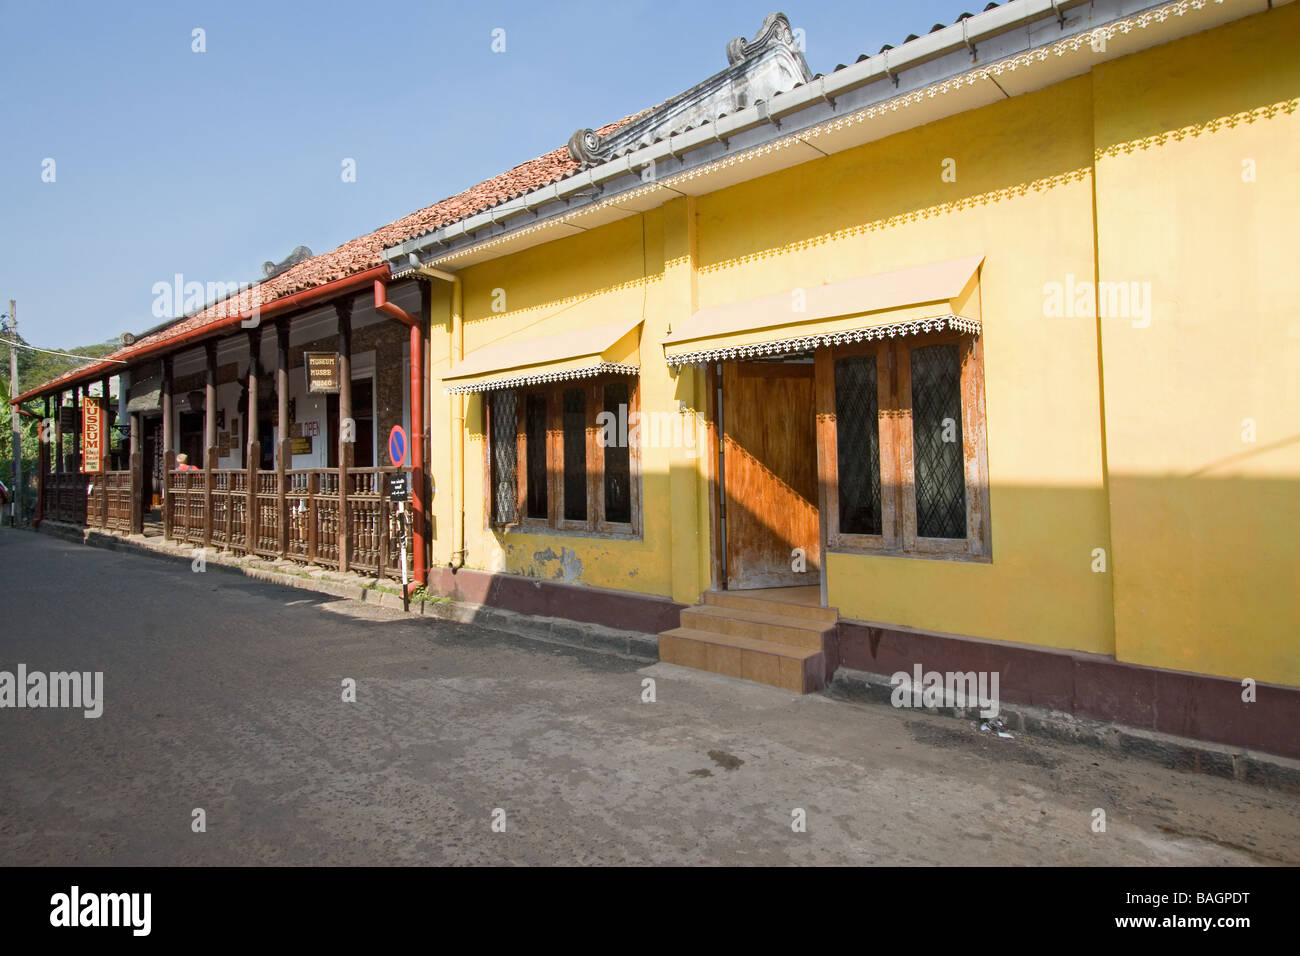 Vista de una calle típica en el antiguo fuerte Holandés en Galle, Sri Lanka, con edificios antiguos y artefactos. Foto de stock